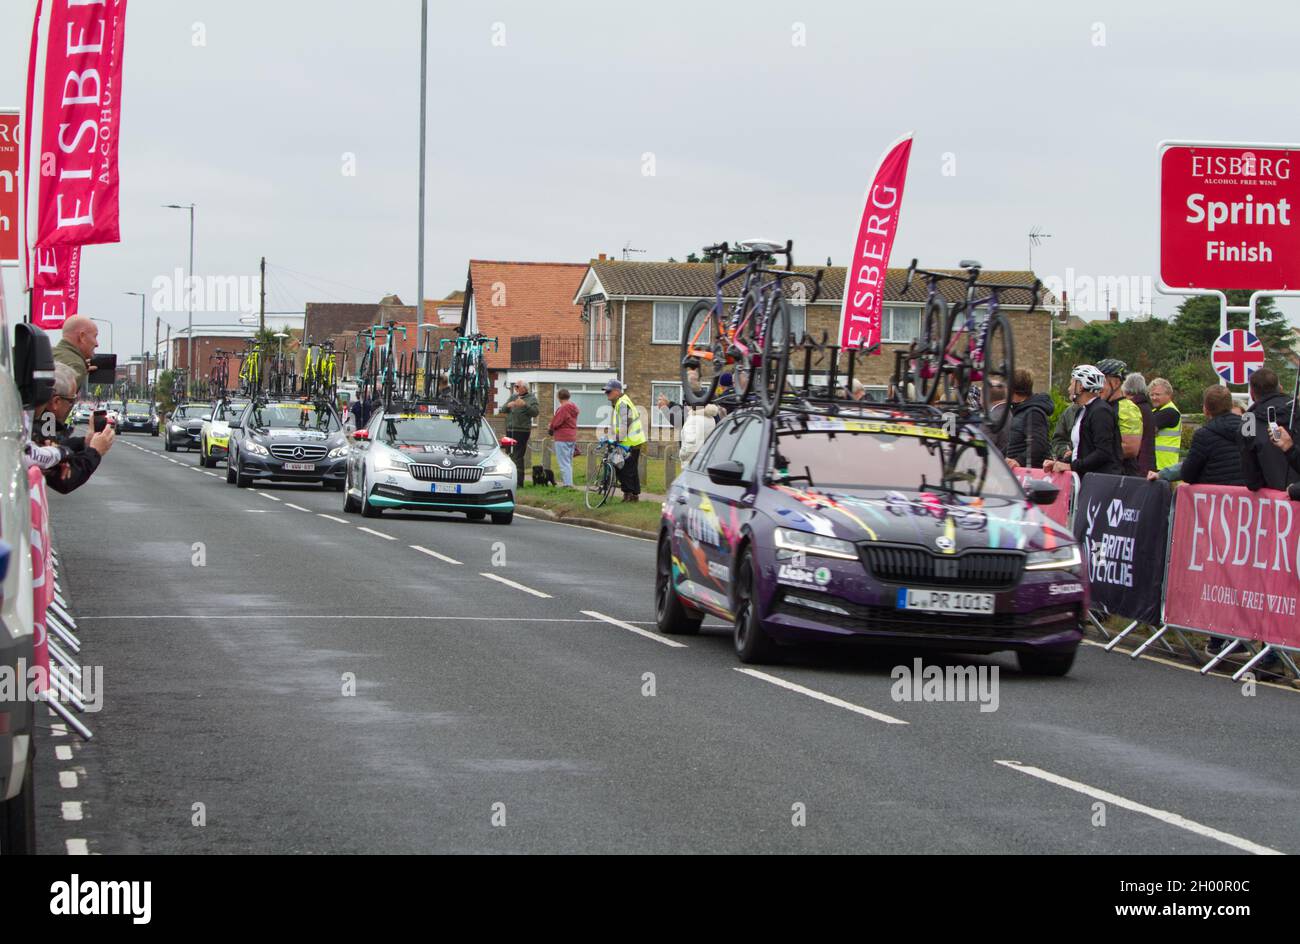 AJ Bell tournée cycliste féminine 2021 étape 5 Colchester à Clacton.Les voitures de soutien de l'équipe de cyclisme suivent les coureurs en procession Banque D'Images